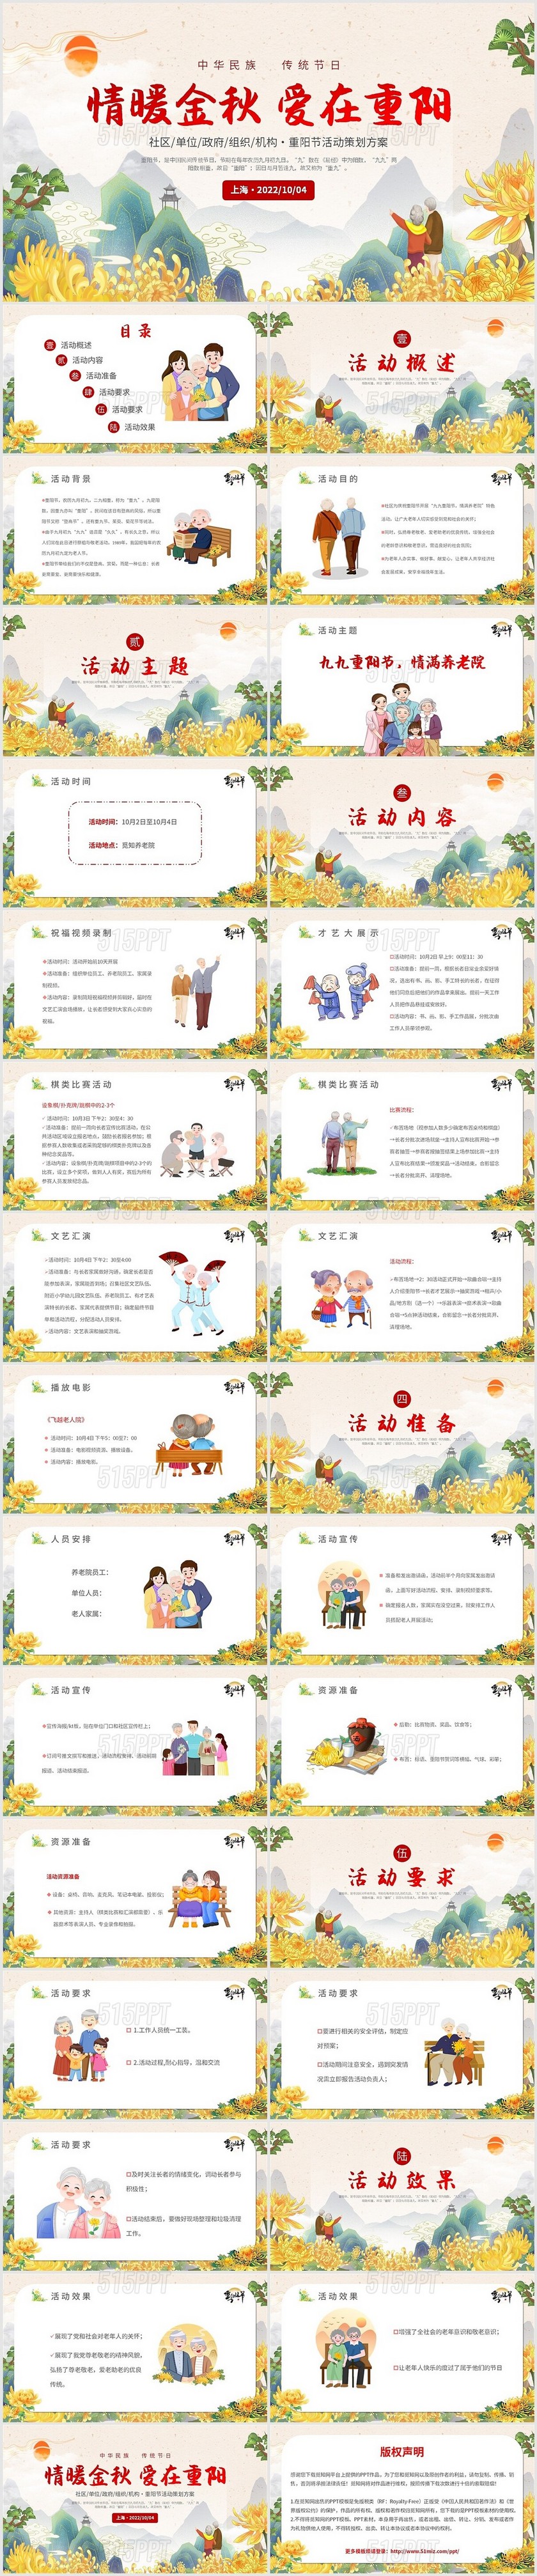 2022中国风烫金山水老人重阳节活动方案社区单位政府机构模板社区重阳节活动方案